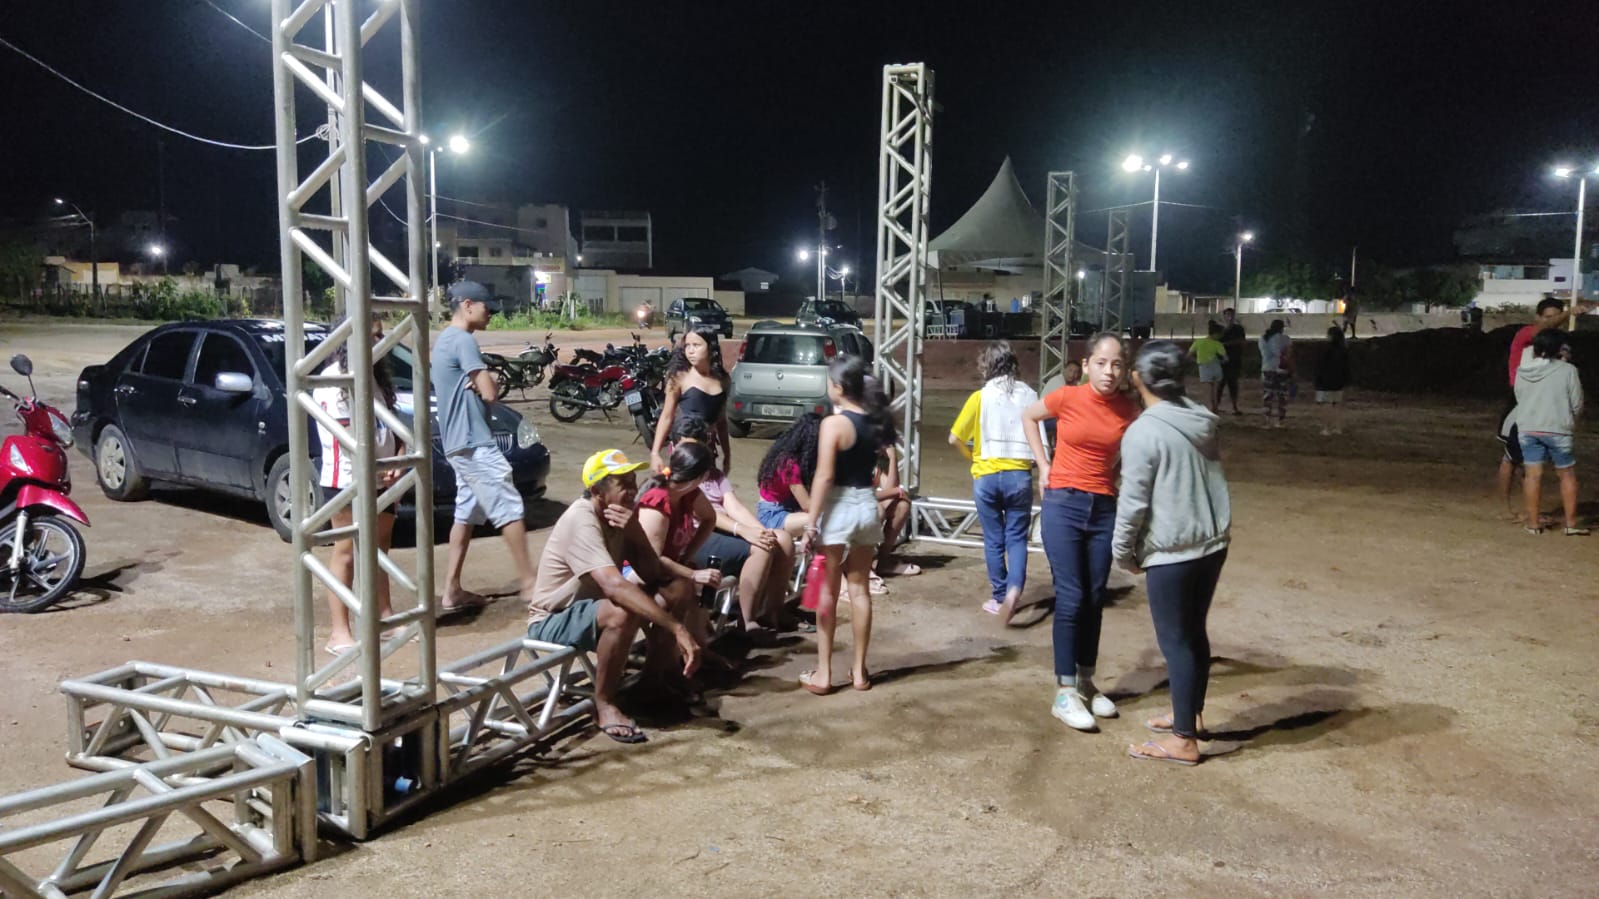 PAIXÃO DE CRISTO: Atores e Bailarinos iniciam ensaio aberto na praça de eventos de Monteiro